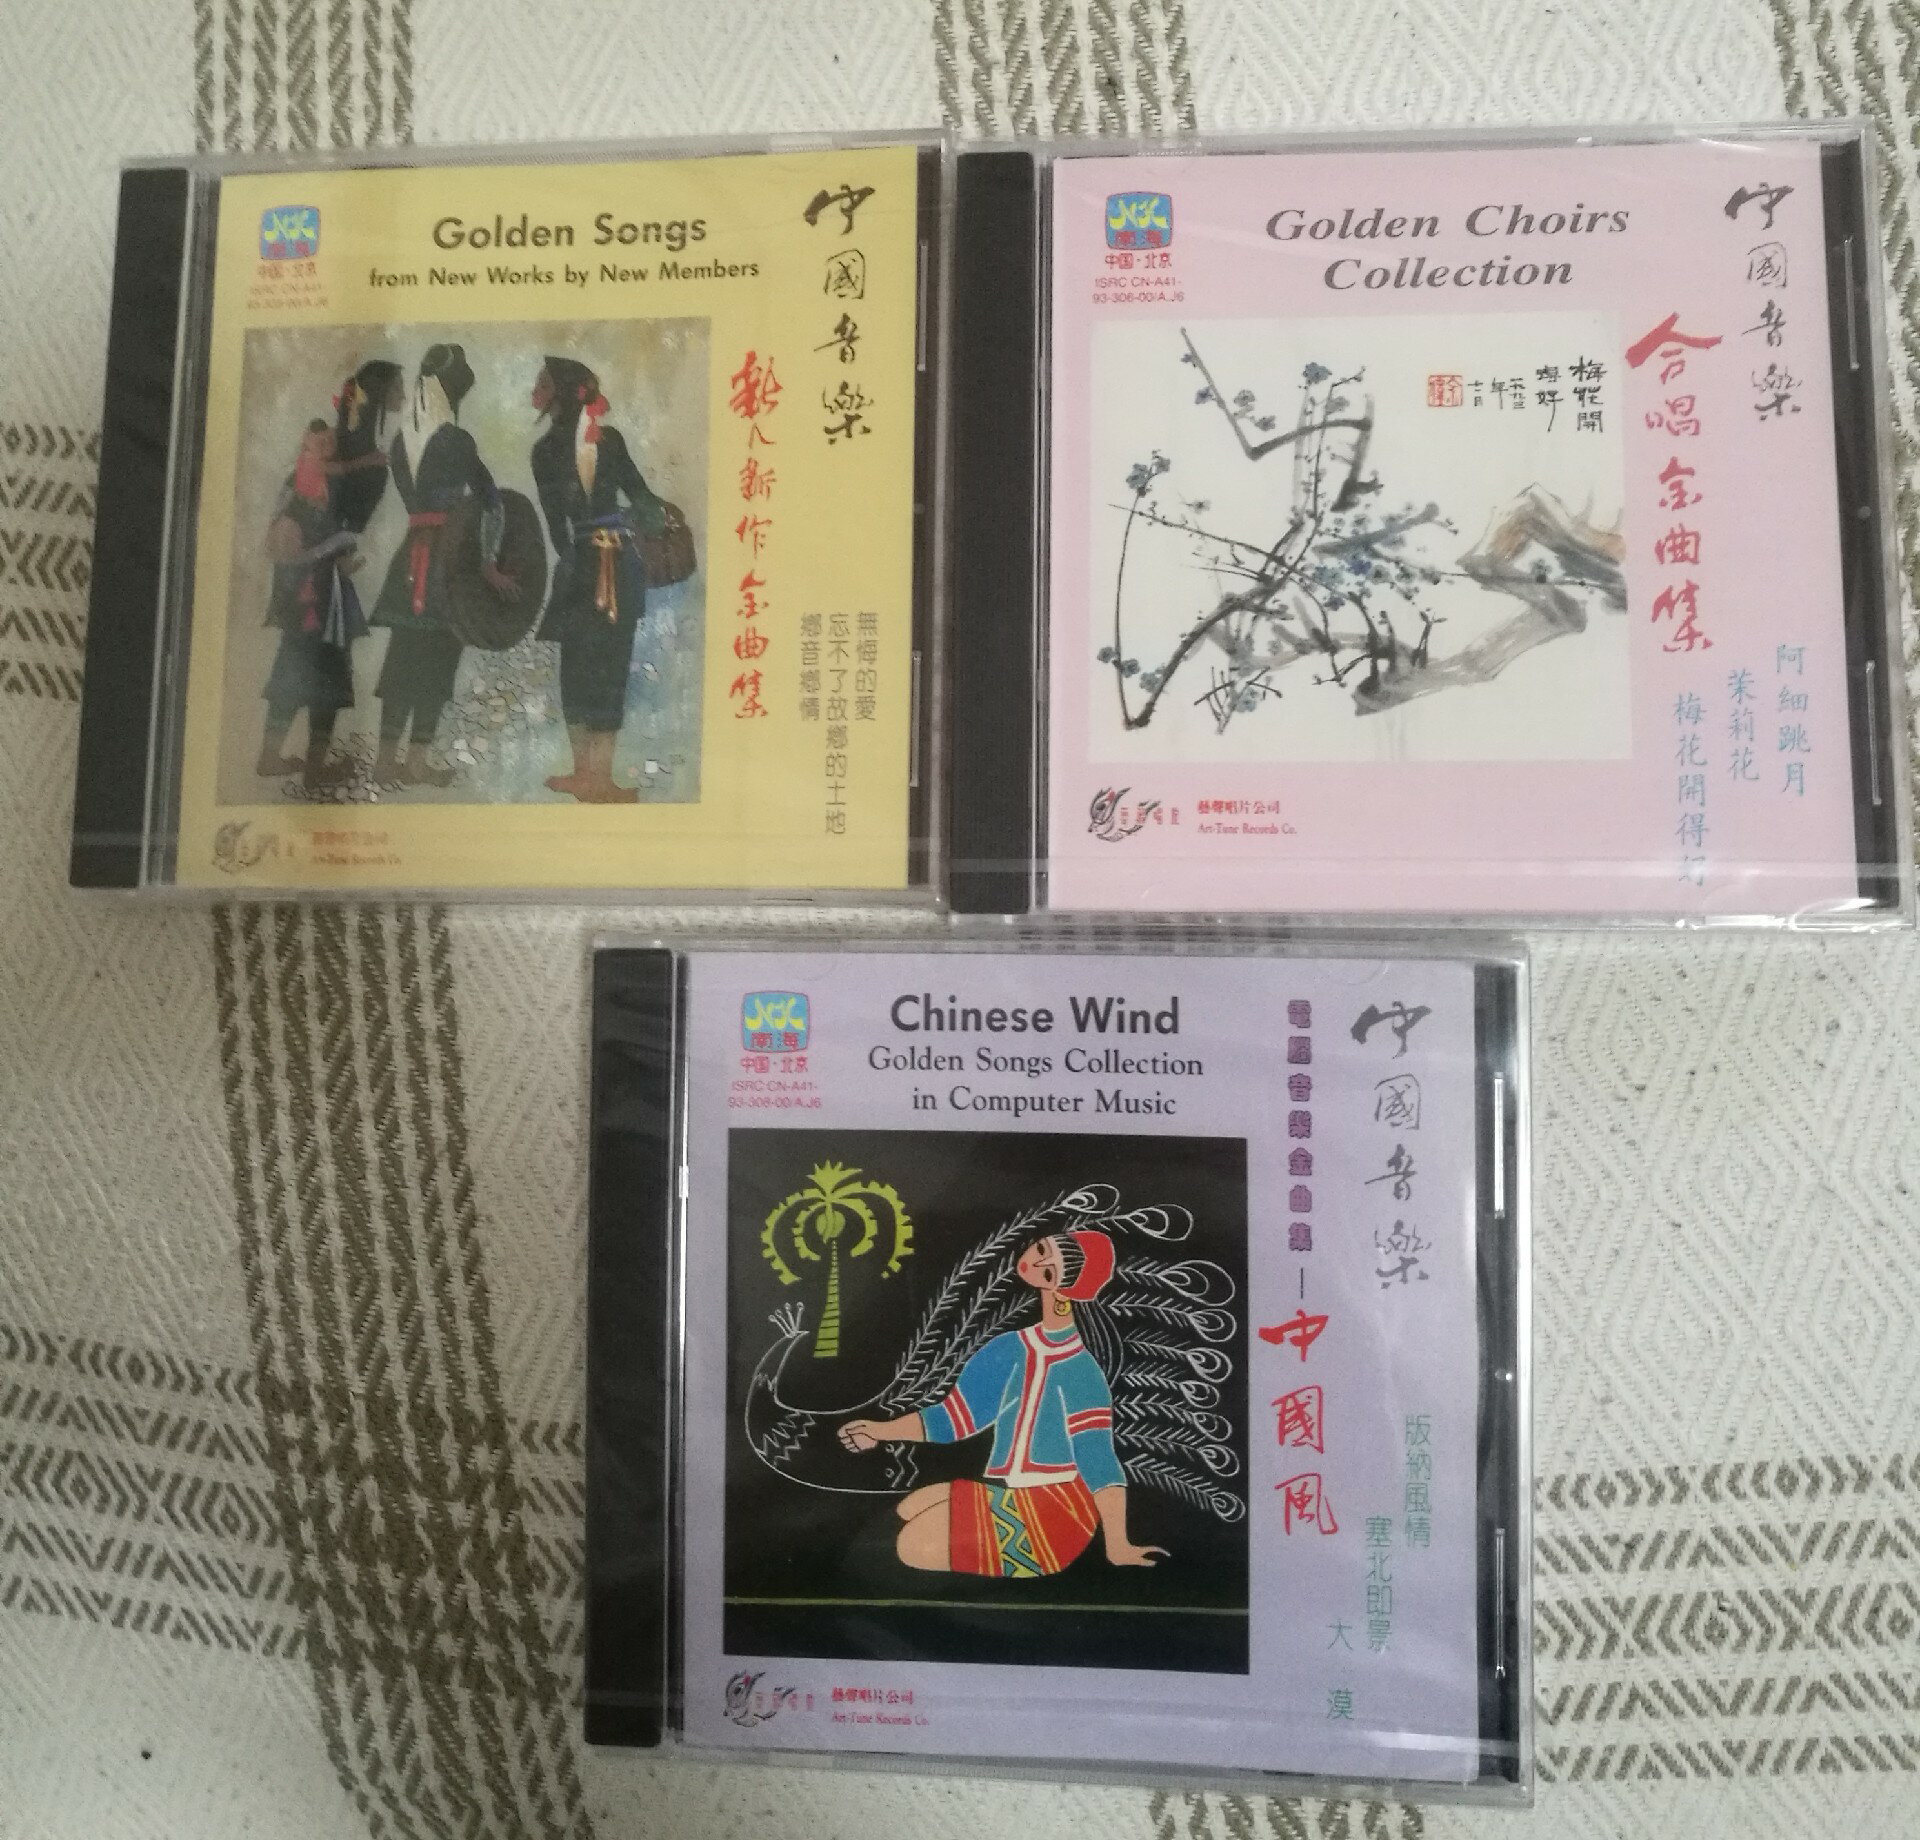 全新全品保真未拆封CD光碟日本壓碟原版原聲90年代南海聲像公